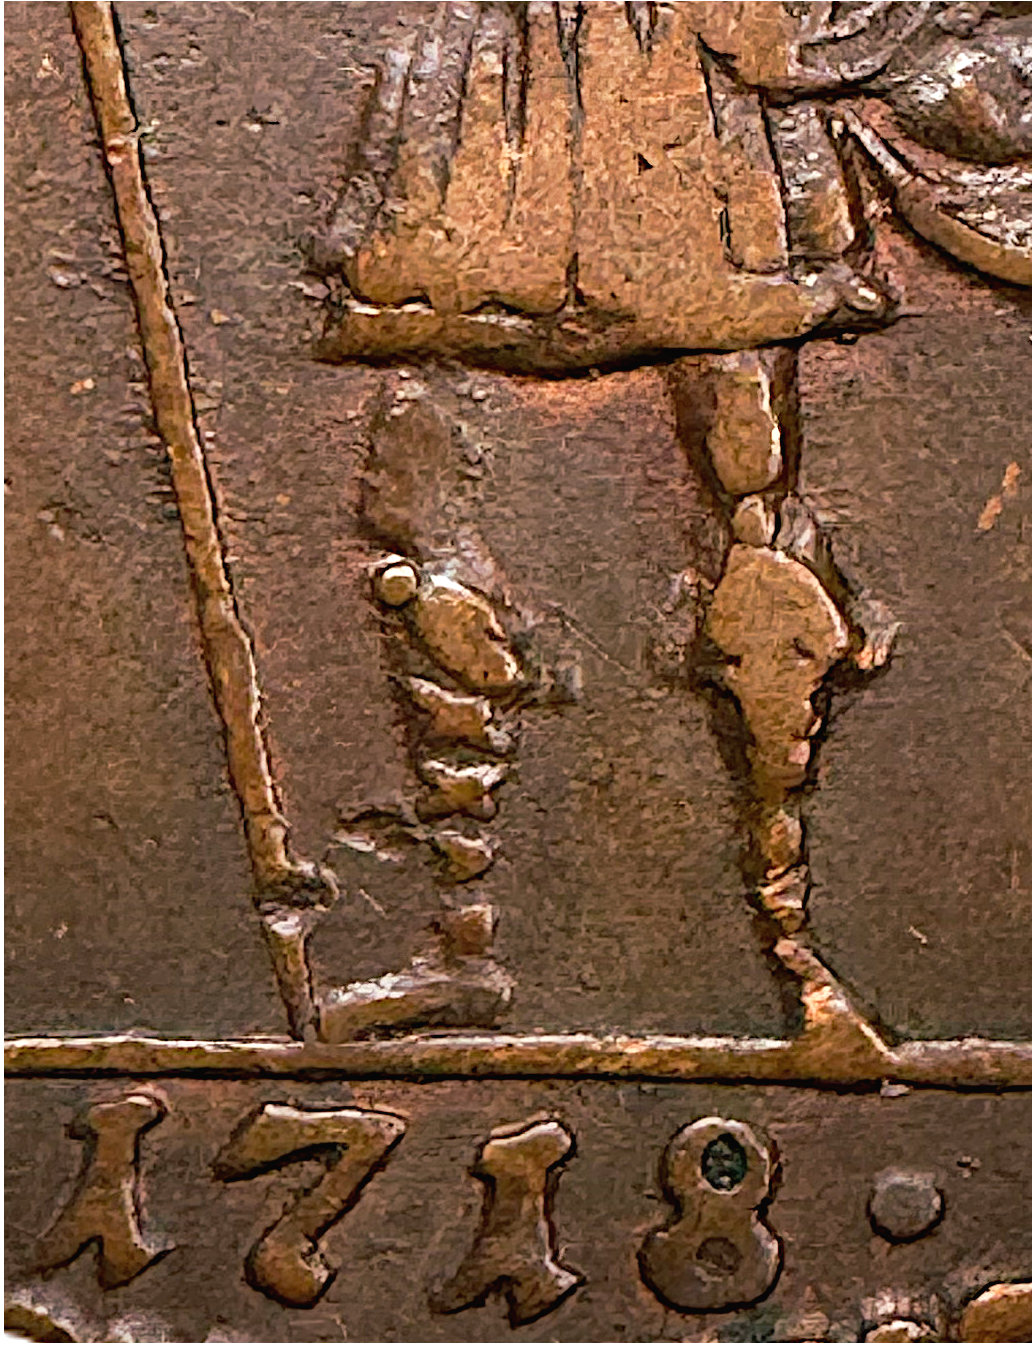 Karl XII - 1 DSM 1718 - Nödmynt - Mars utan svärd - Mycket sällsynt